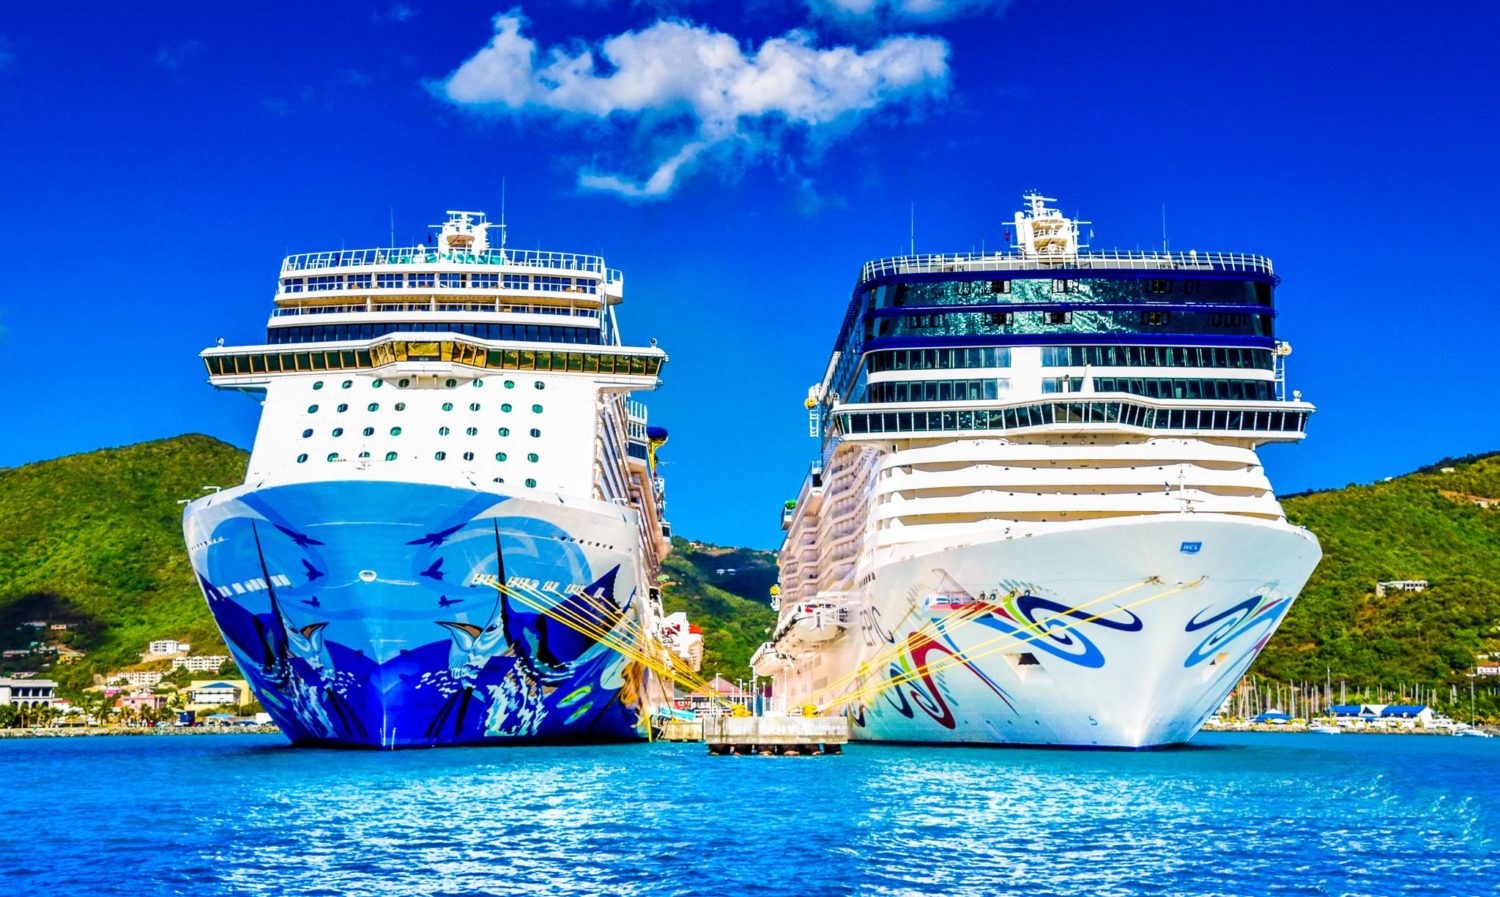 Αποτέλεσμα εικόνας για Norwegian Cruise Line Holdings Announces Order for Next Generation of Ships for Norwegian Cruise Line